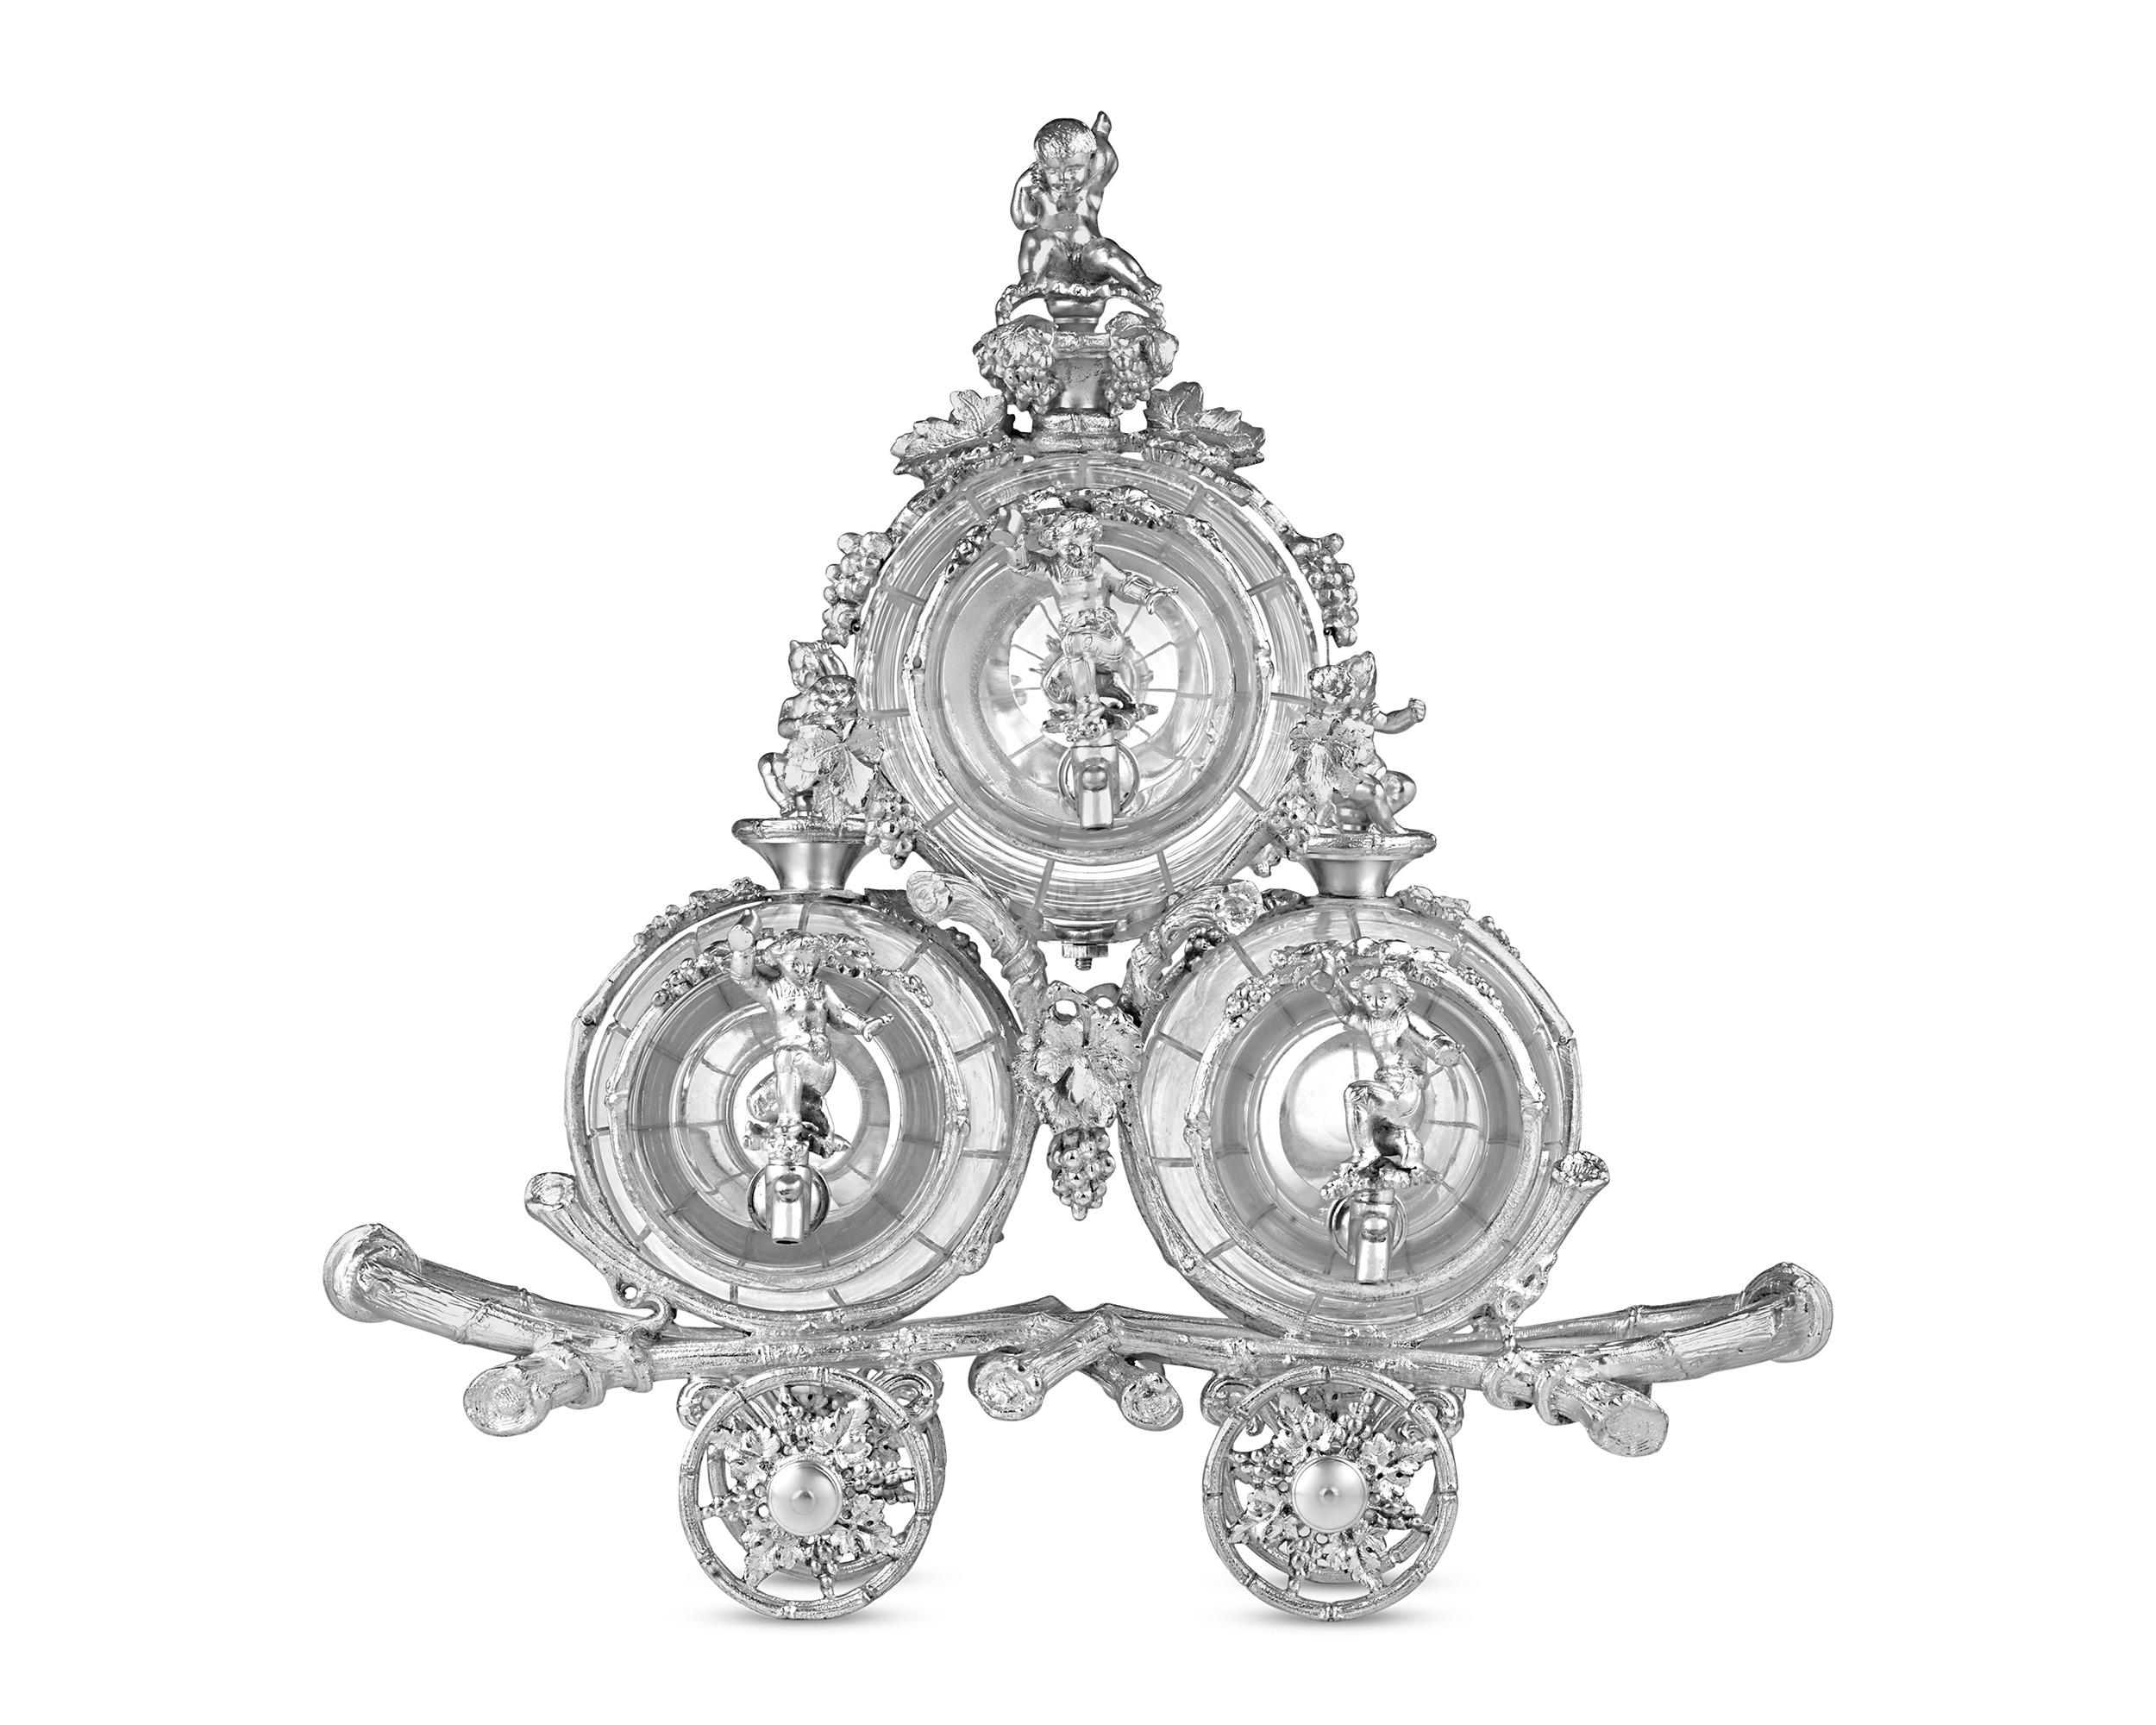 Ce charmant tantale en cristal et en métal argenté anglais du XIXe siècle a la forme de trois tonneaux sur un chariot. Historiquement, l'objectif du tantale était de protéger les boissons préférées d'une consommation indésirable tout en mettant en